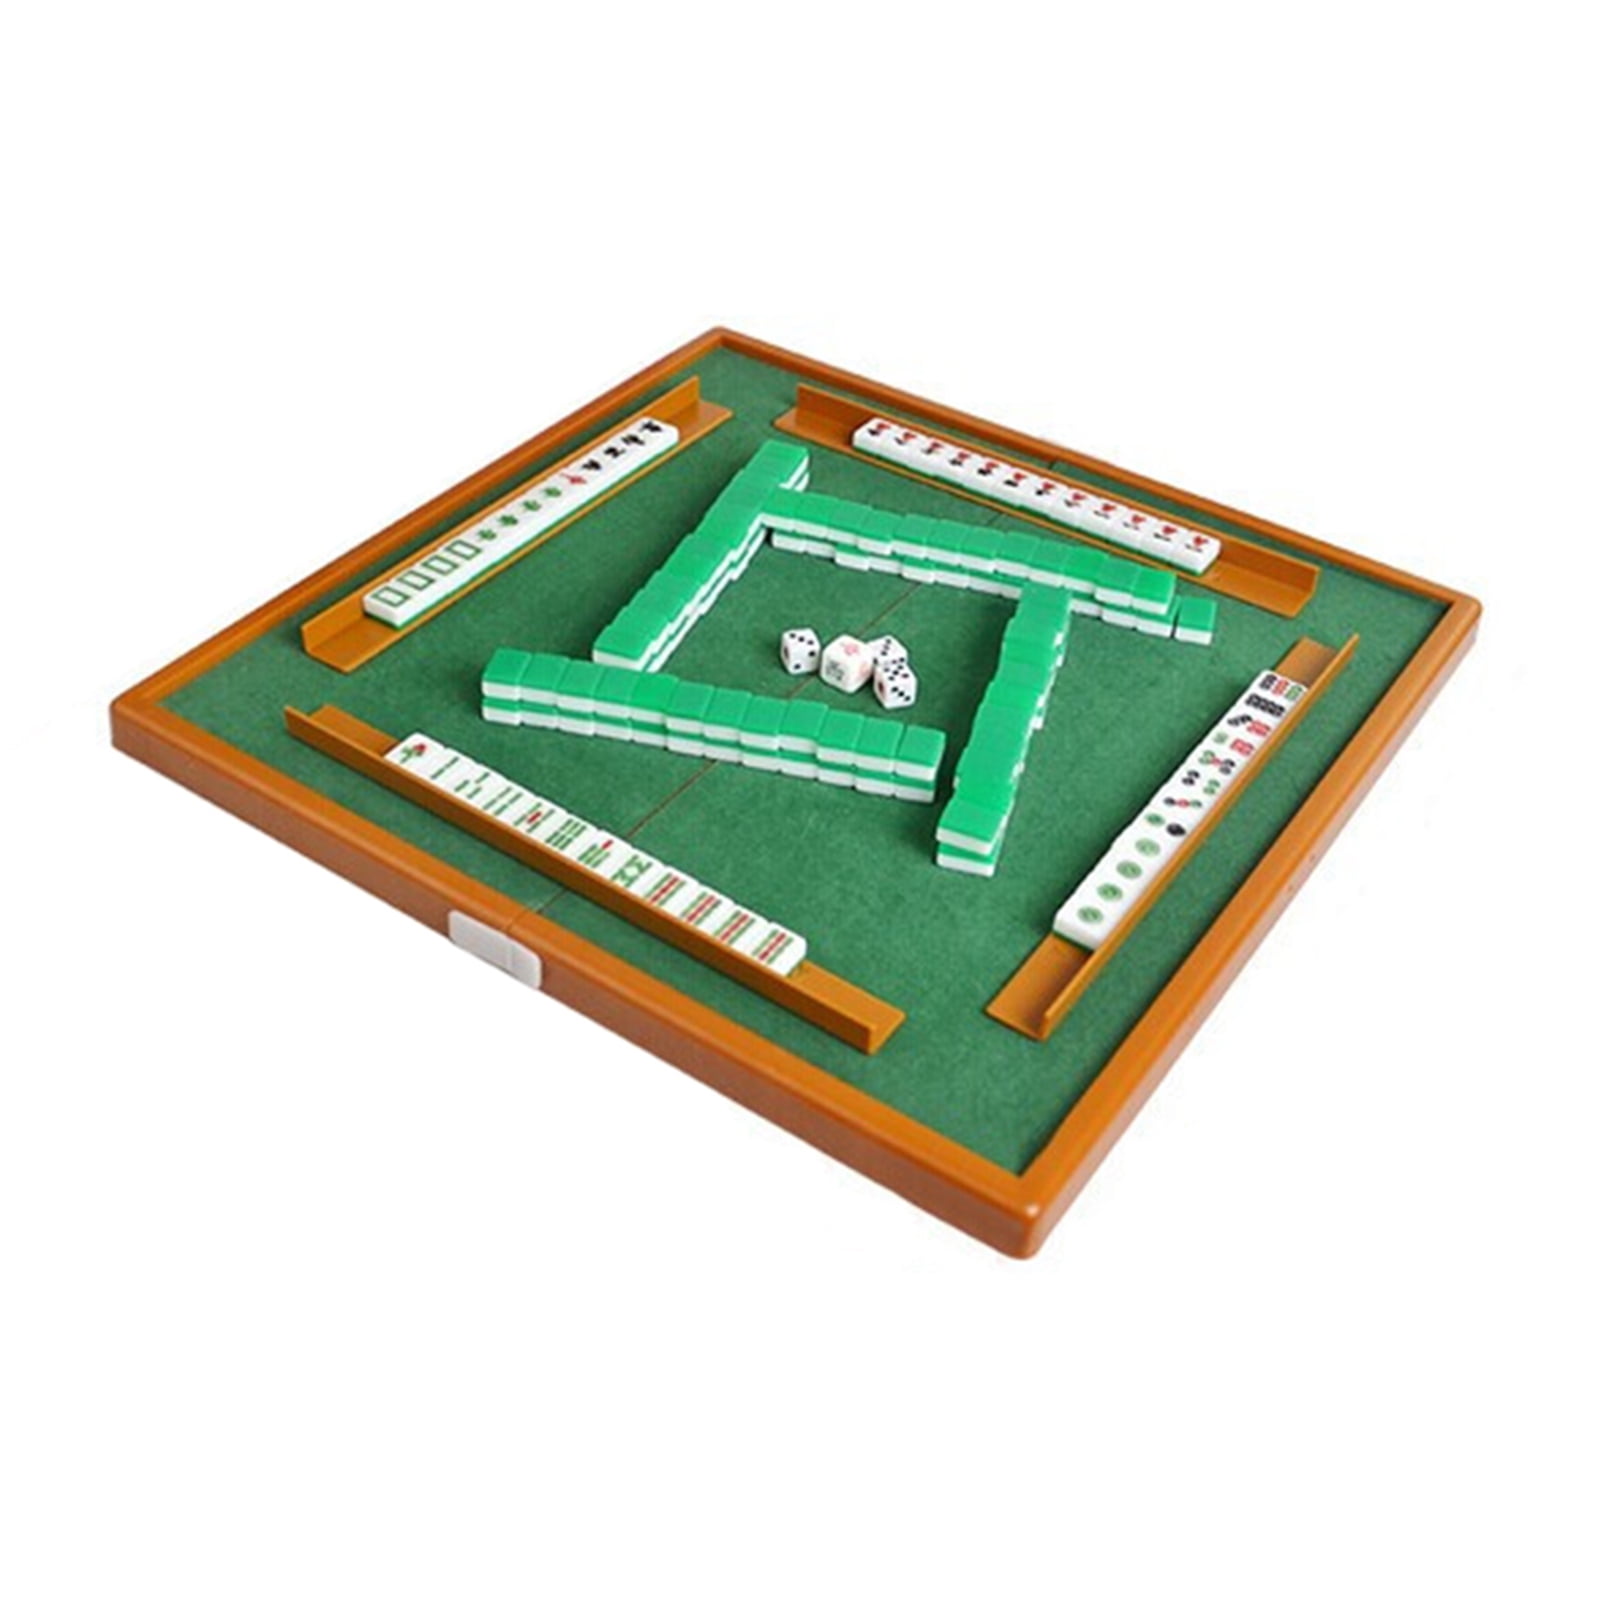 Mahjong , #mahjong_games , #mahjong_online play Miniclip Mahjong 